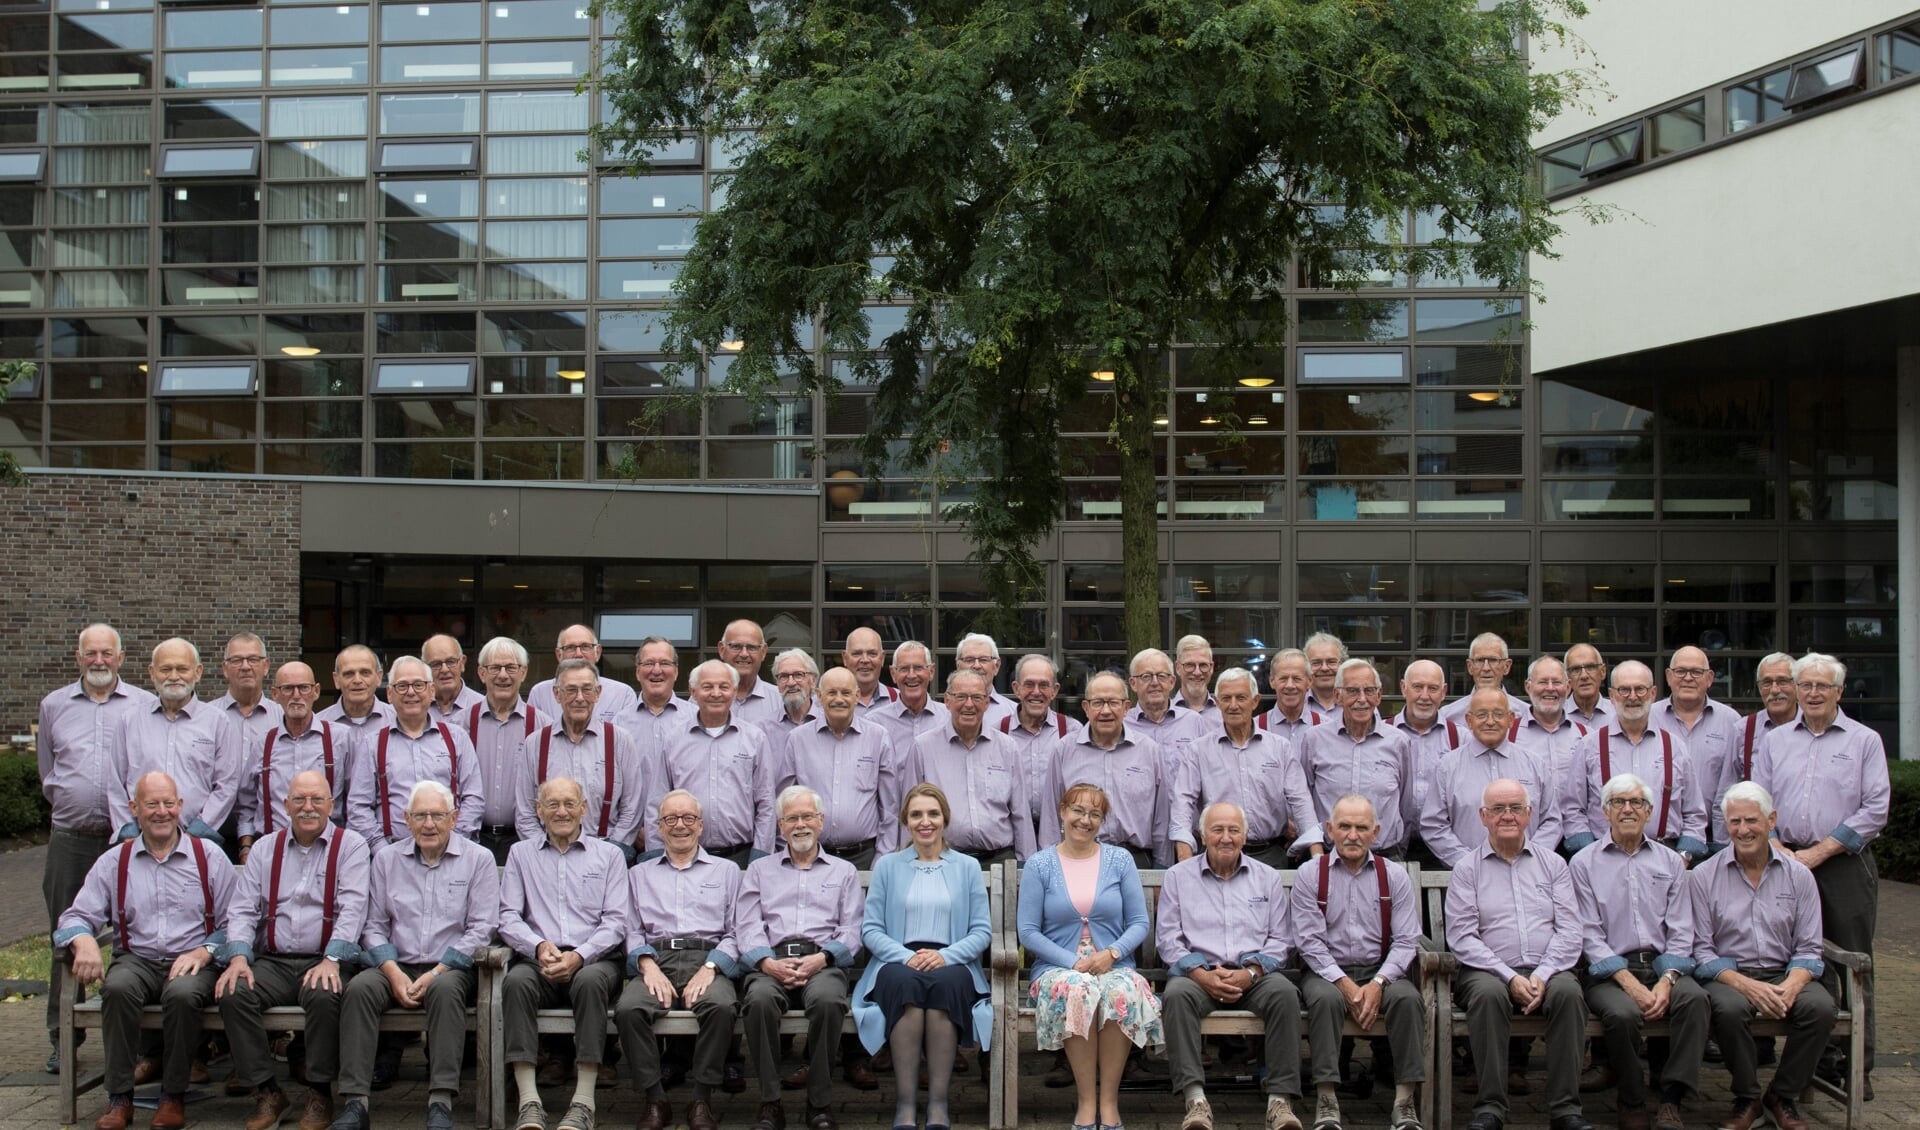 Het Astens Mannenkoor bestaat 55 jaar en houdt daarom komende zaterdag het jubileumconcert 'Mannen krijgen bezoek'.